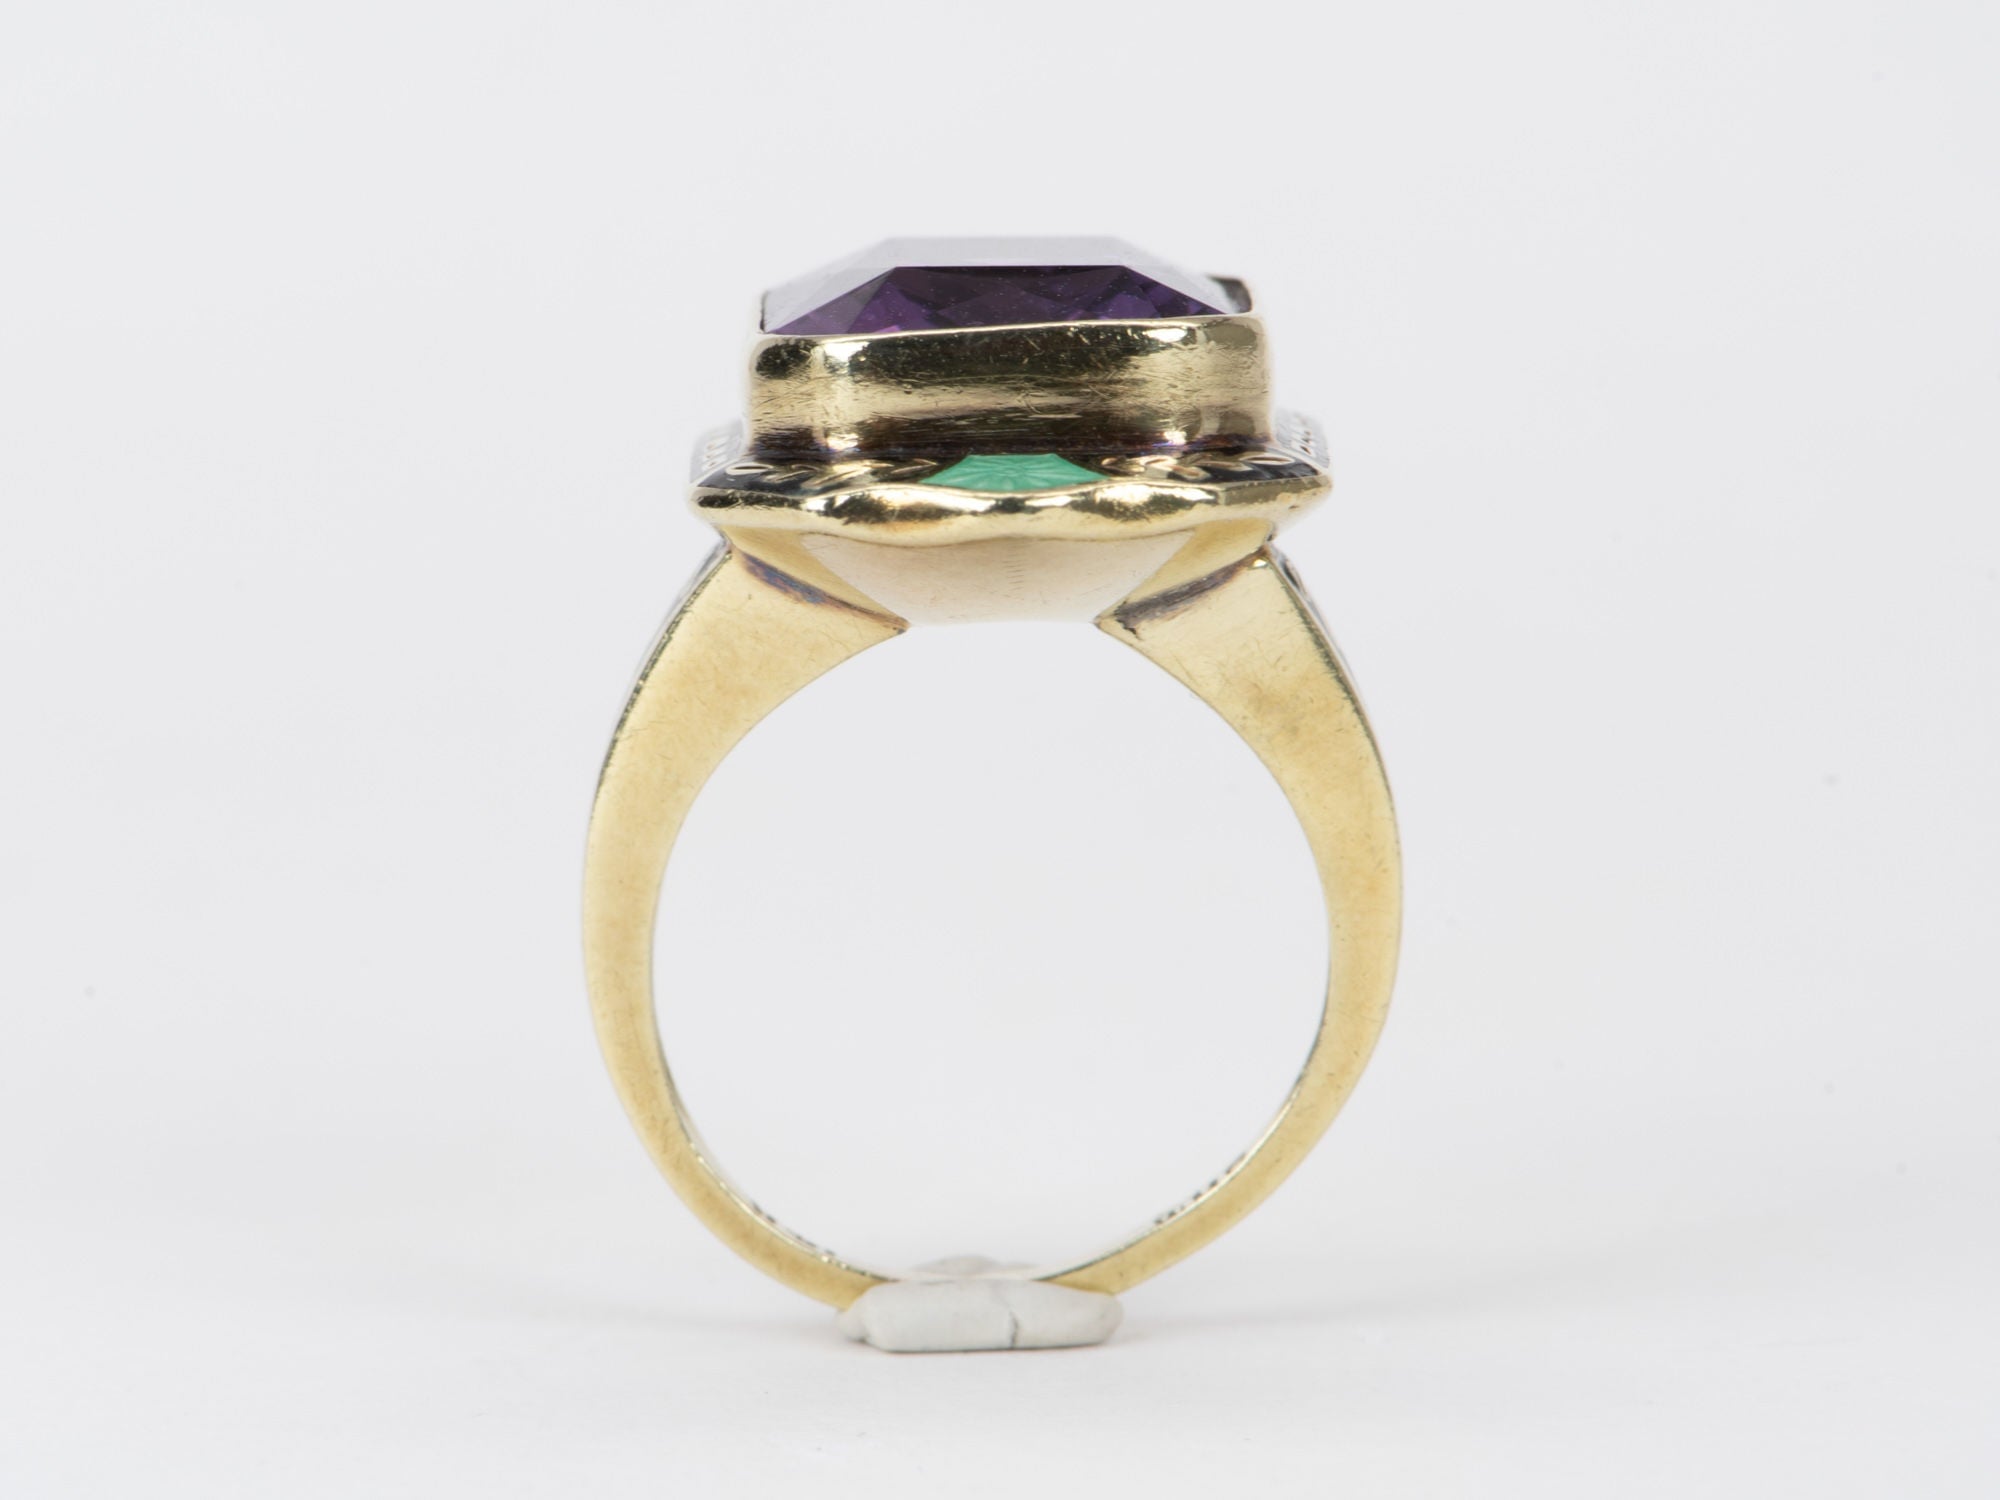 Vintage Statement Amethyst Aurora Ring with - Enamel Details V10 8.93g Designer 14K Gold